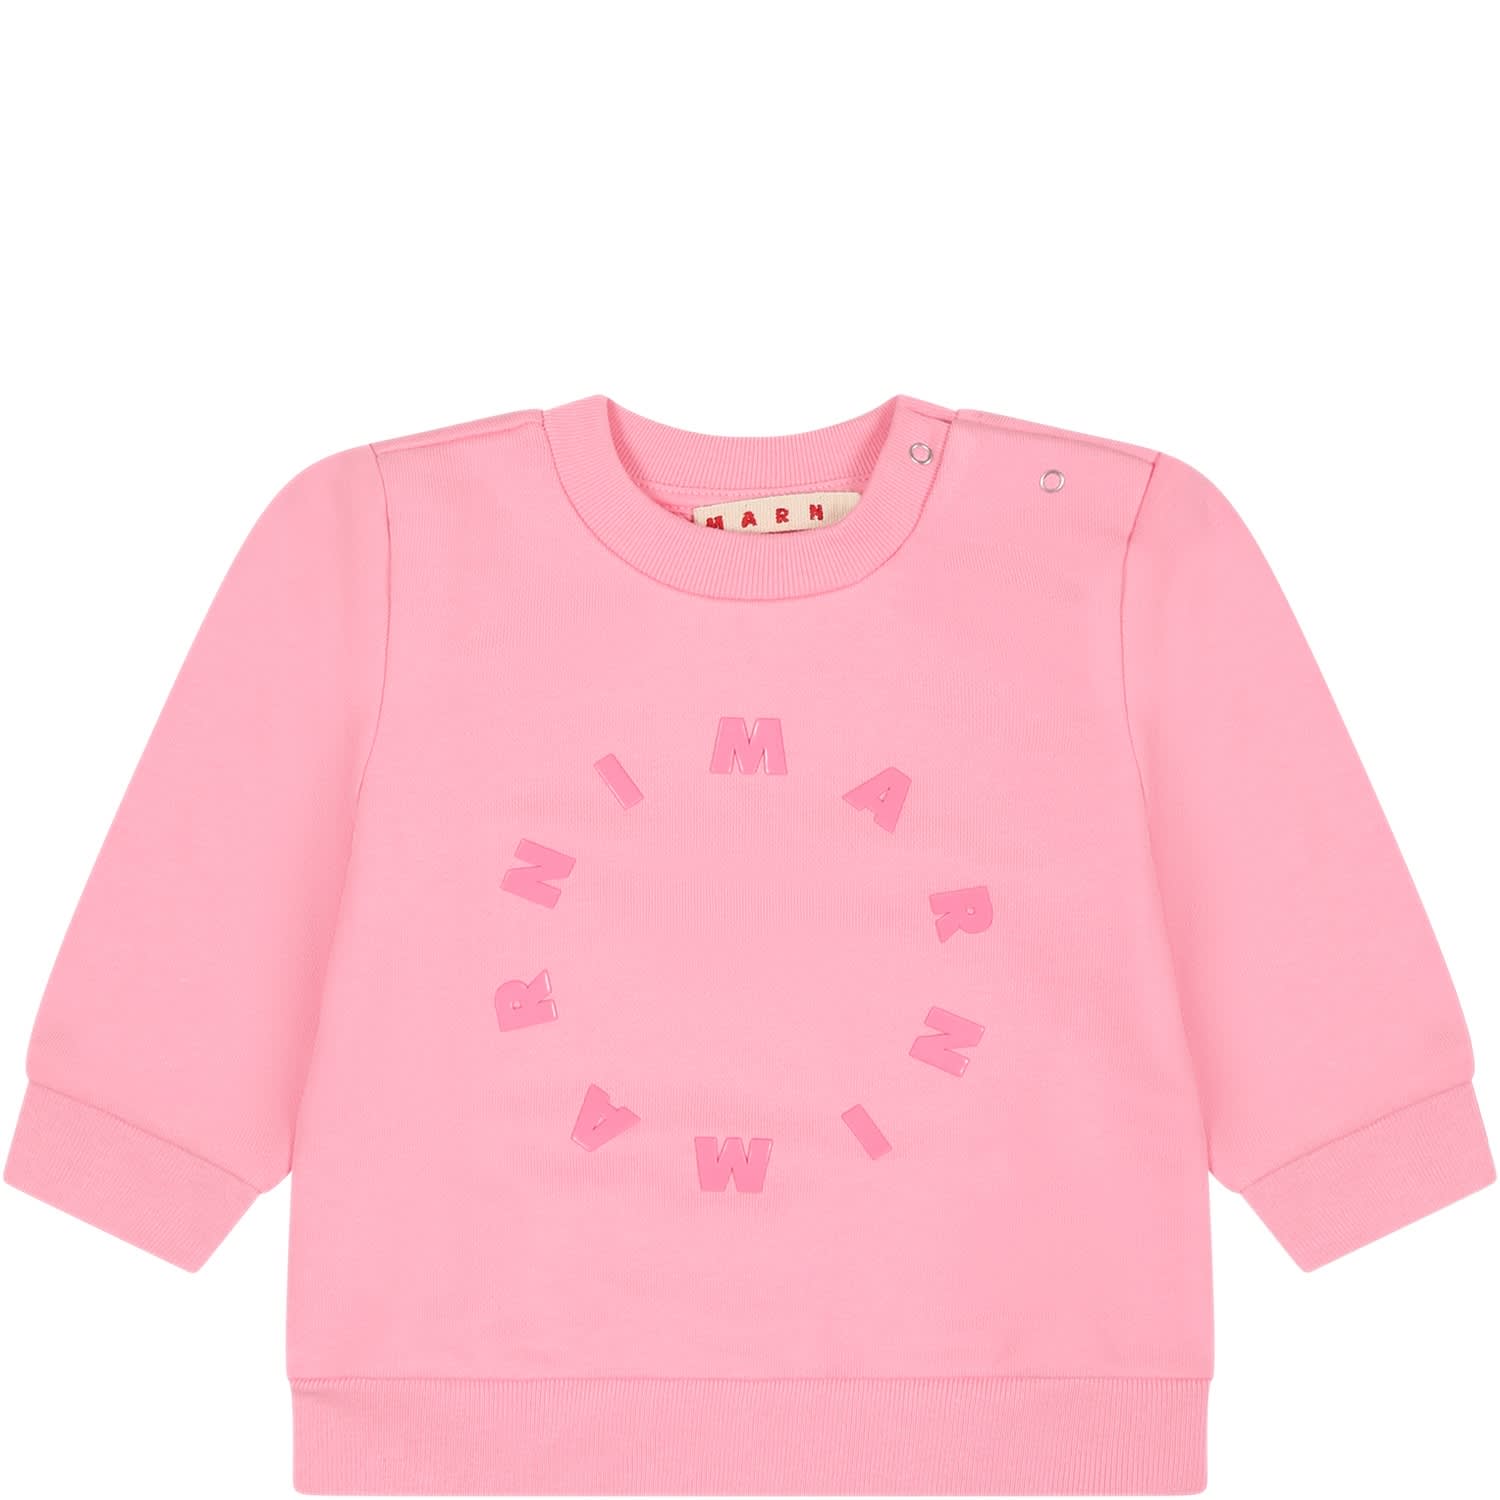 Marni Pink Sweatshirt For Baby Girl With Logo